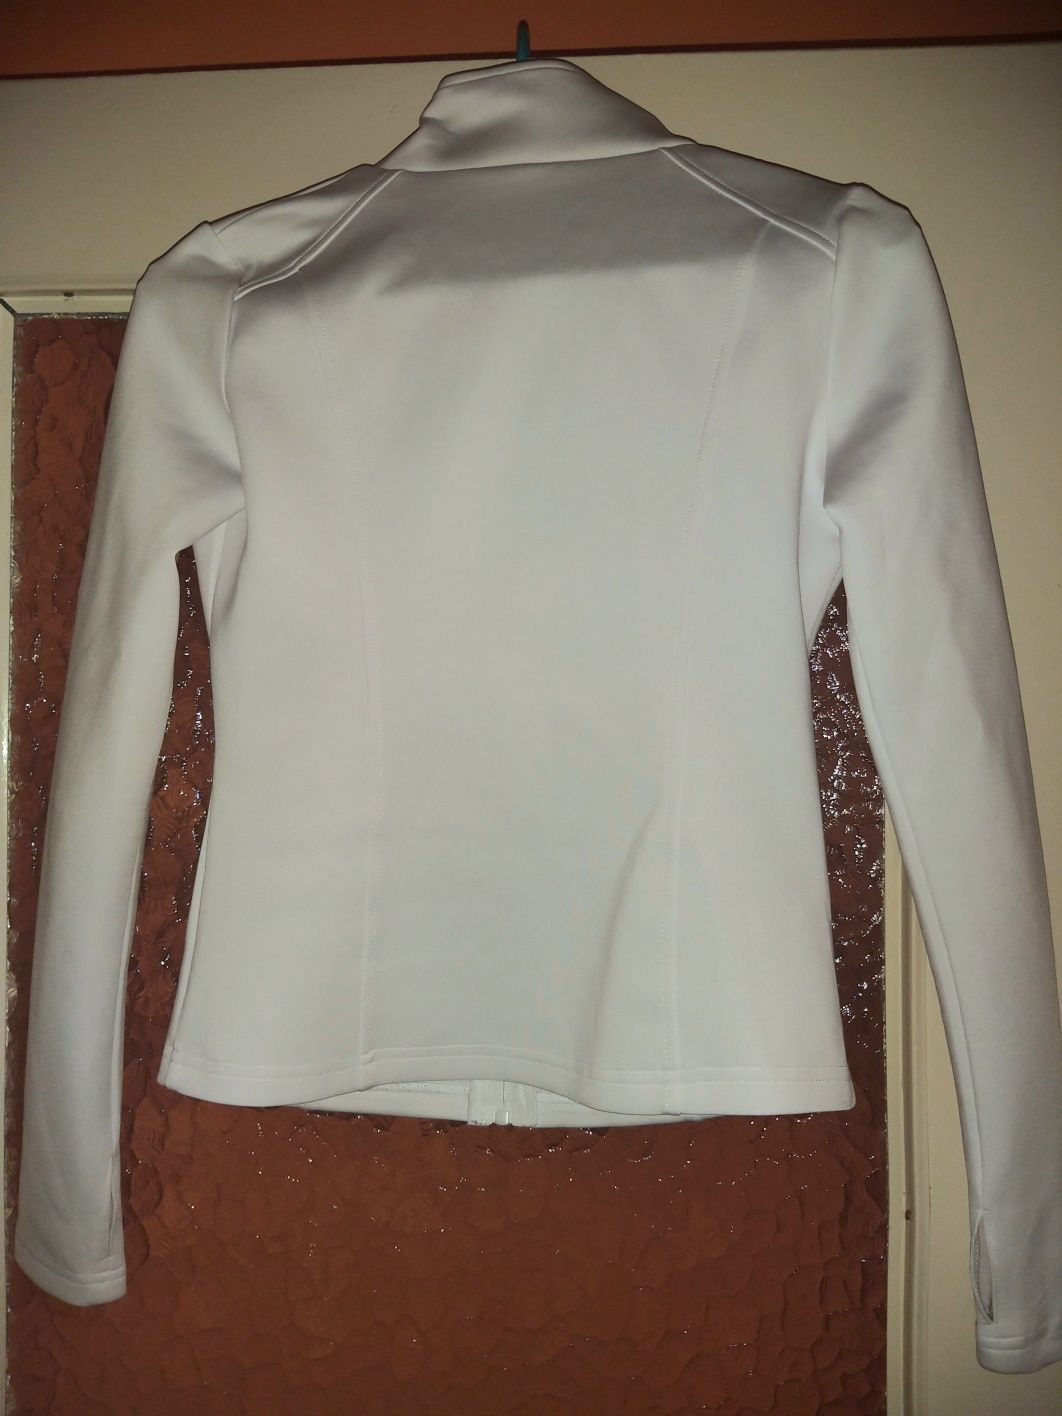 Bluza sportowa biała kurtka żakiet